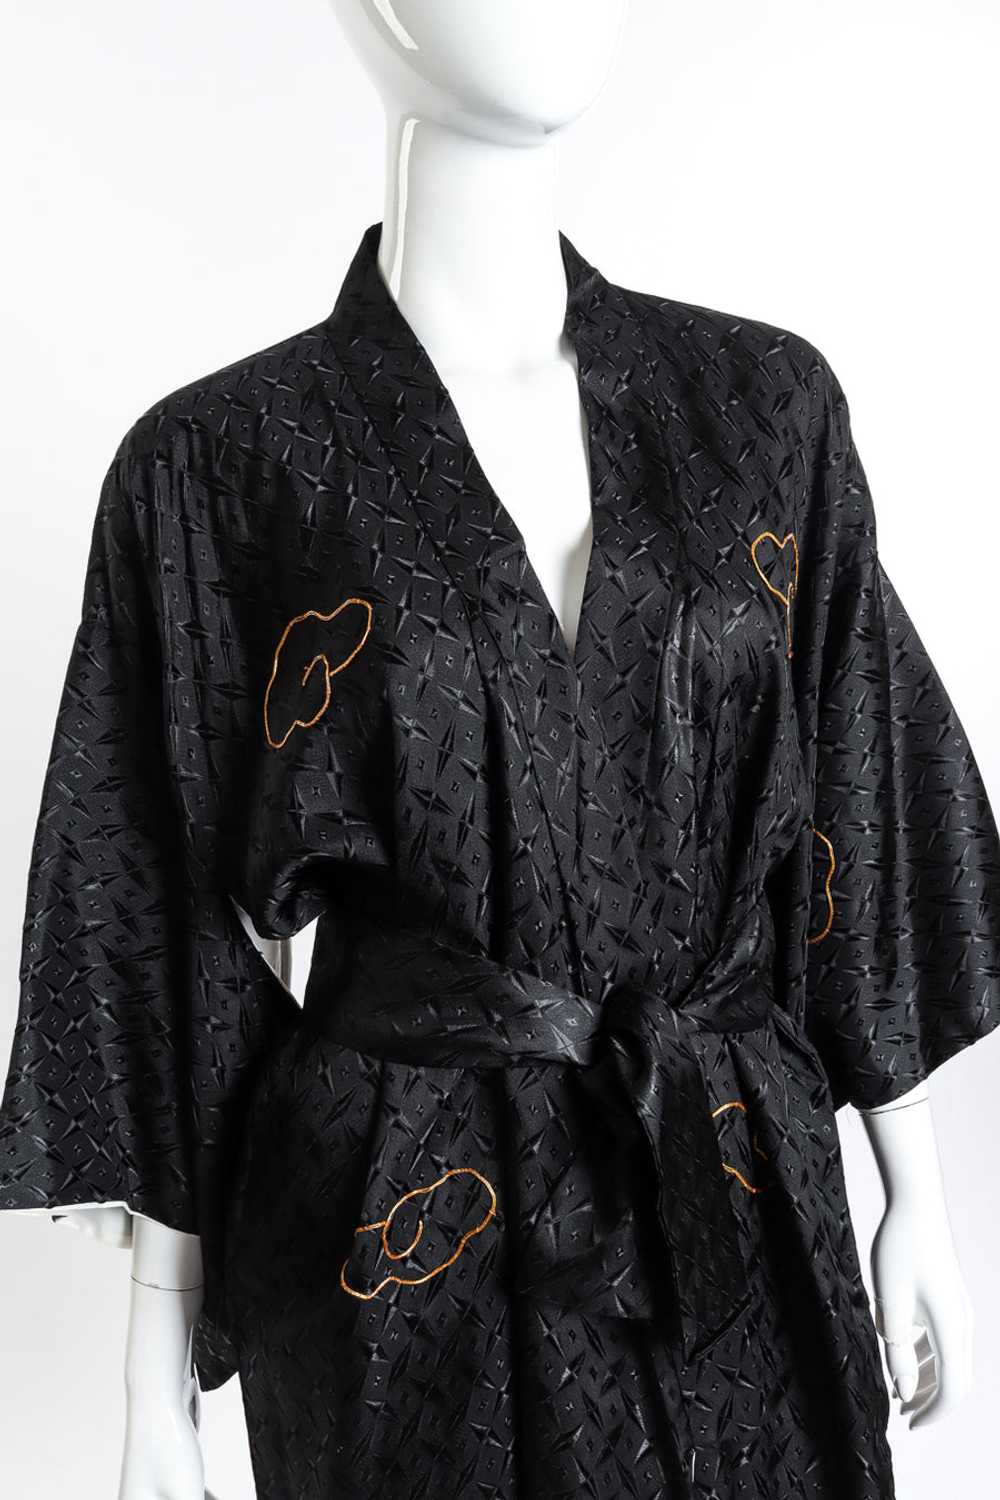 Embroidered Dragon Kimono - image 5